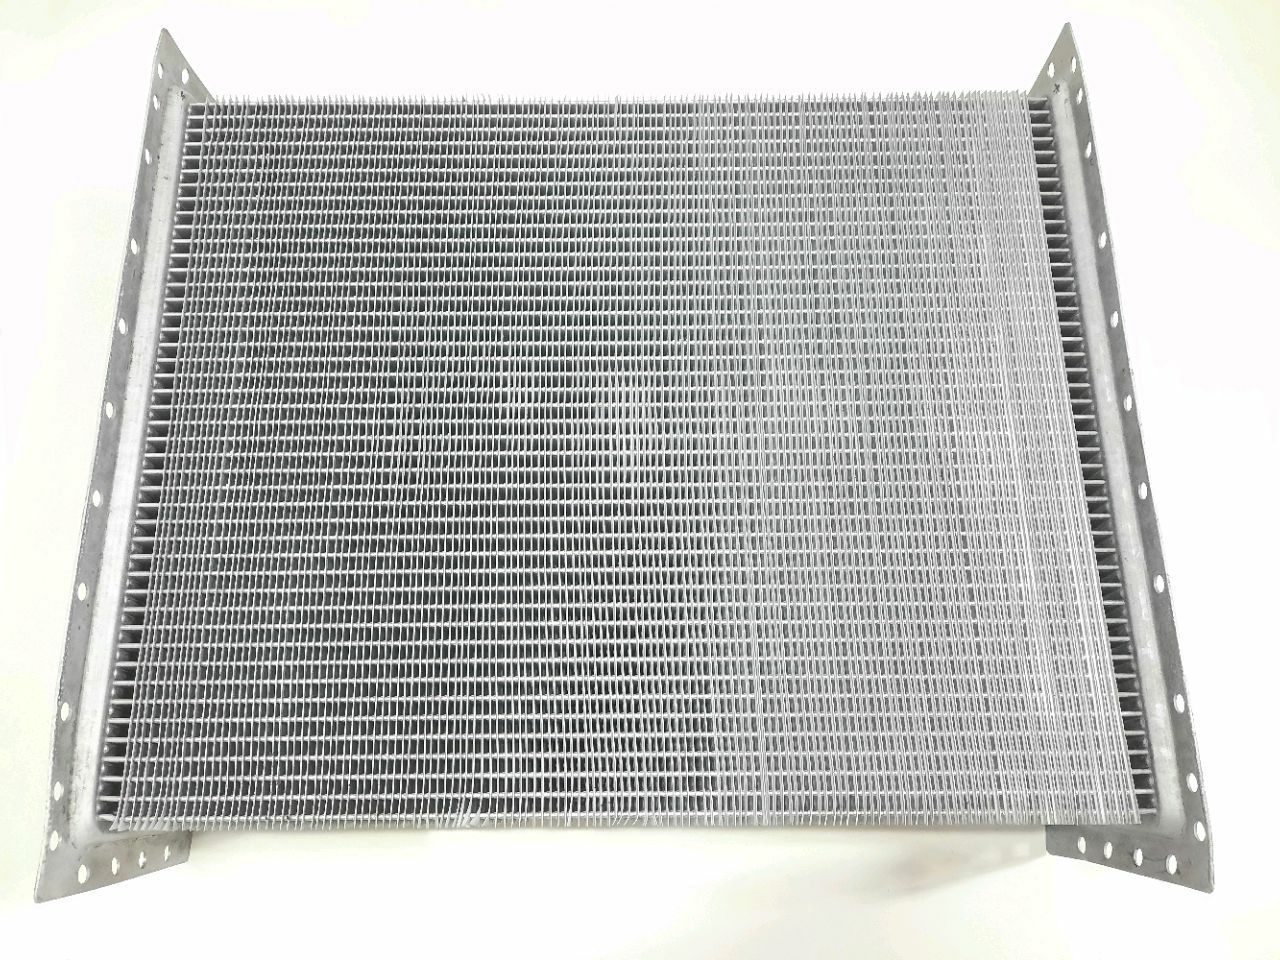 Miez de radiator MTZ-1221 (5-rînduri) (aluminiu) (BMZ)